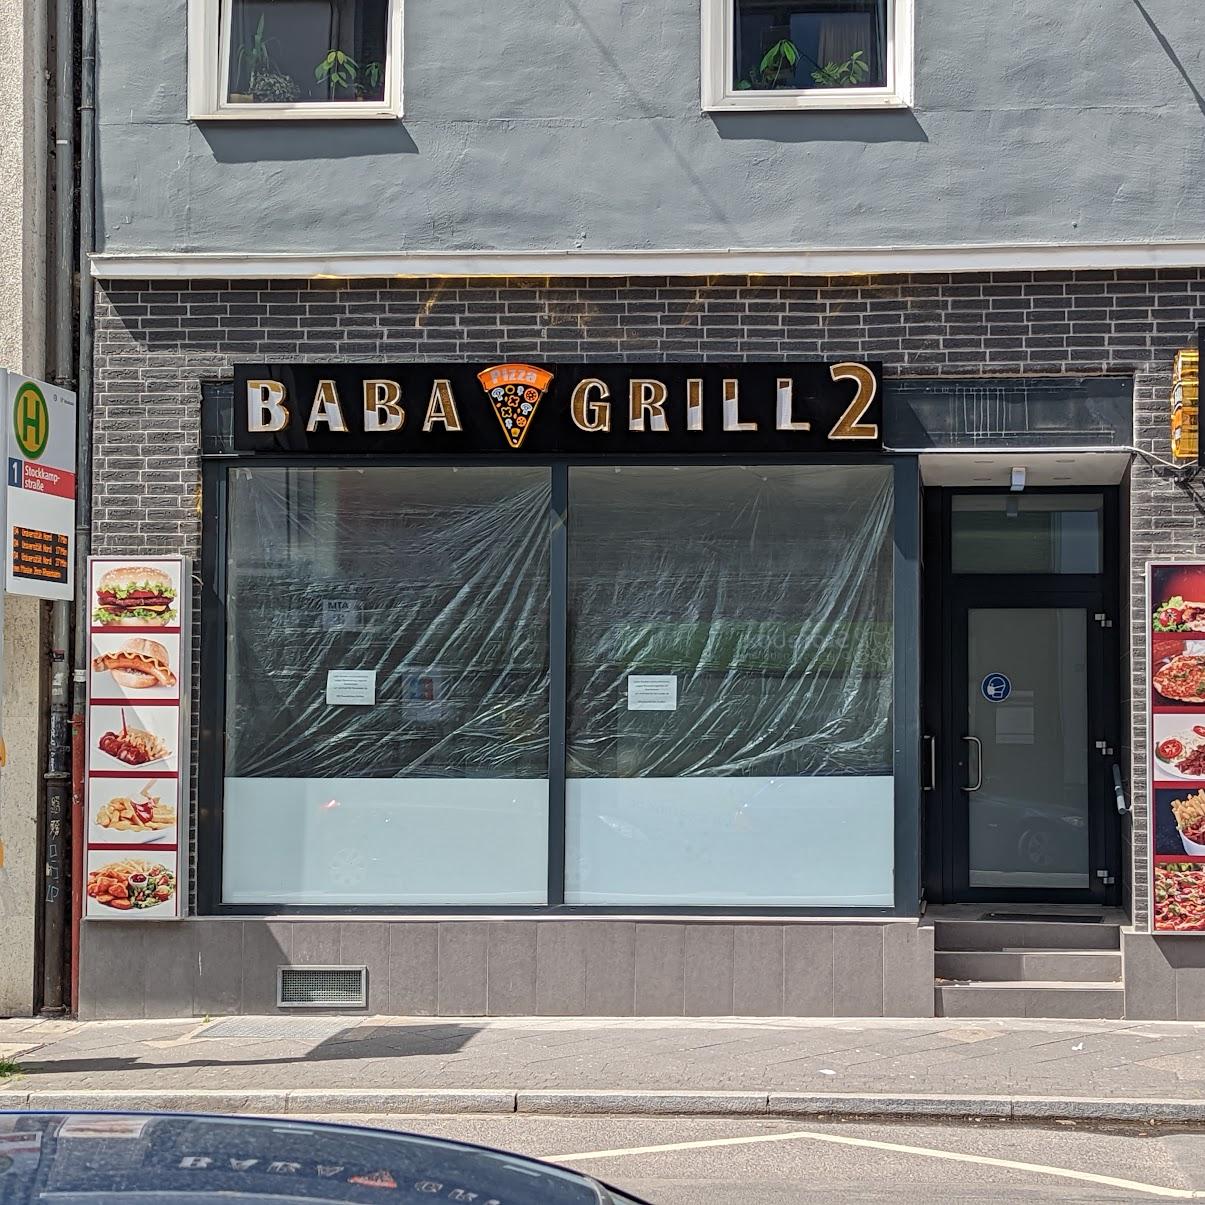 Restaurant "Baba Grill 2" in Düsseldorf